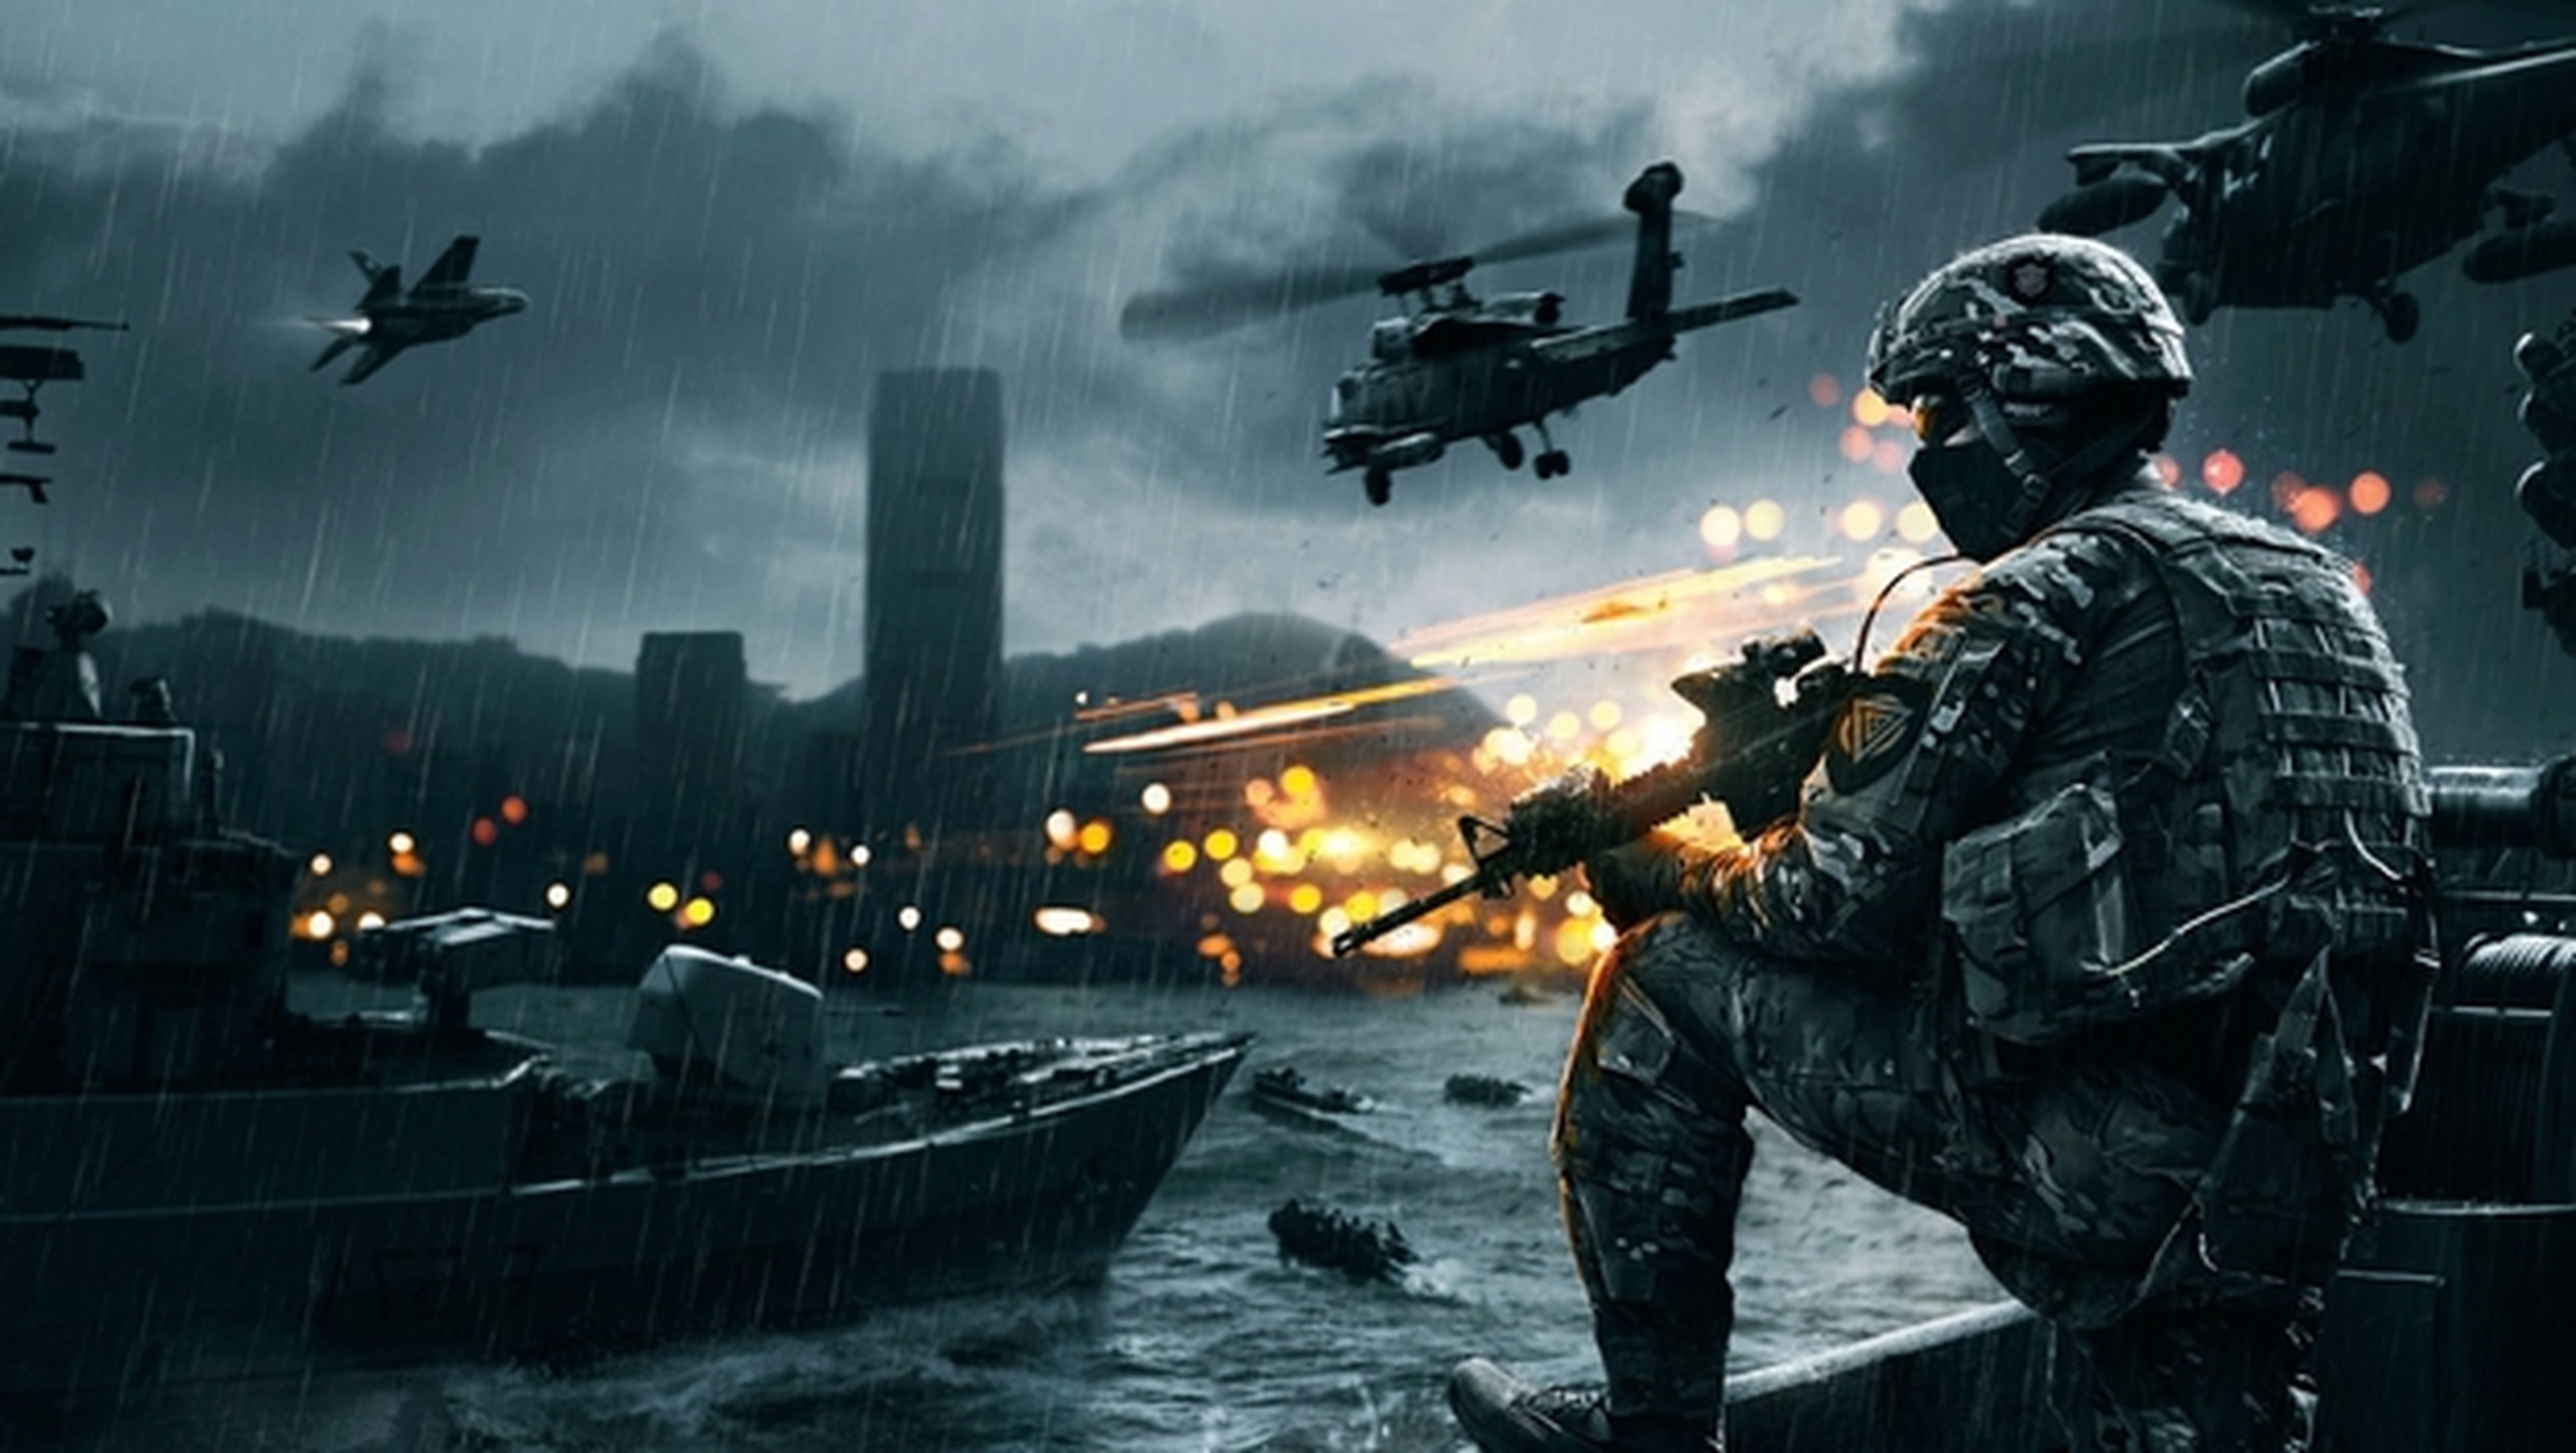 Battlefield 4 completo y gratis para PC, en Origin, para que juegues una semana.